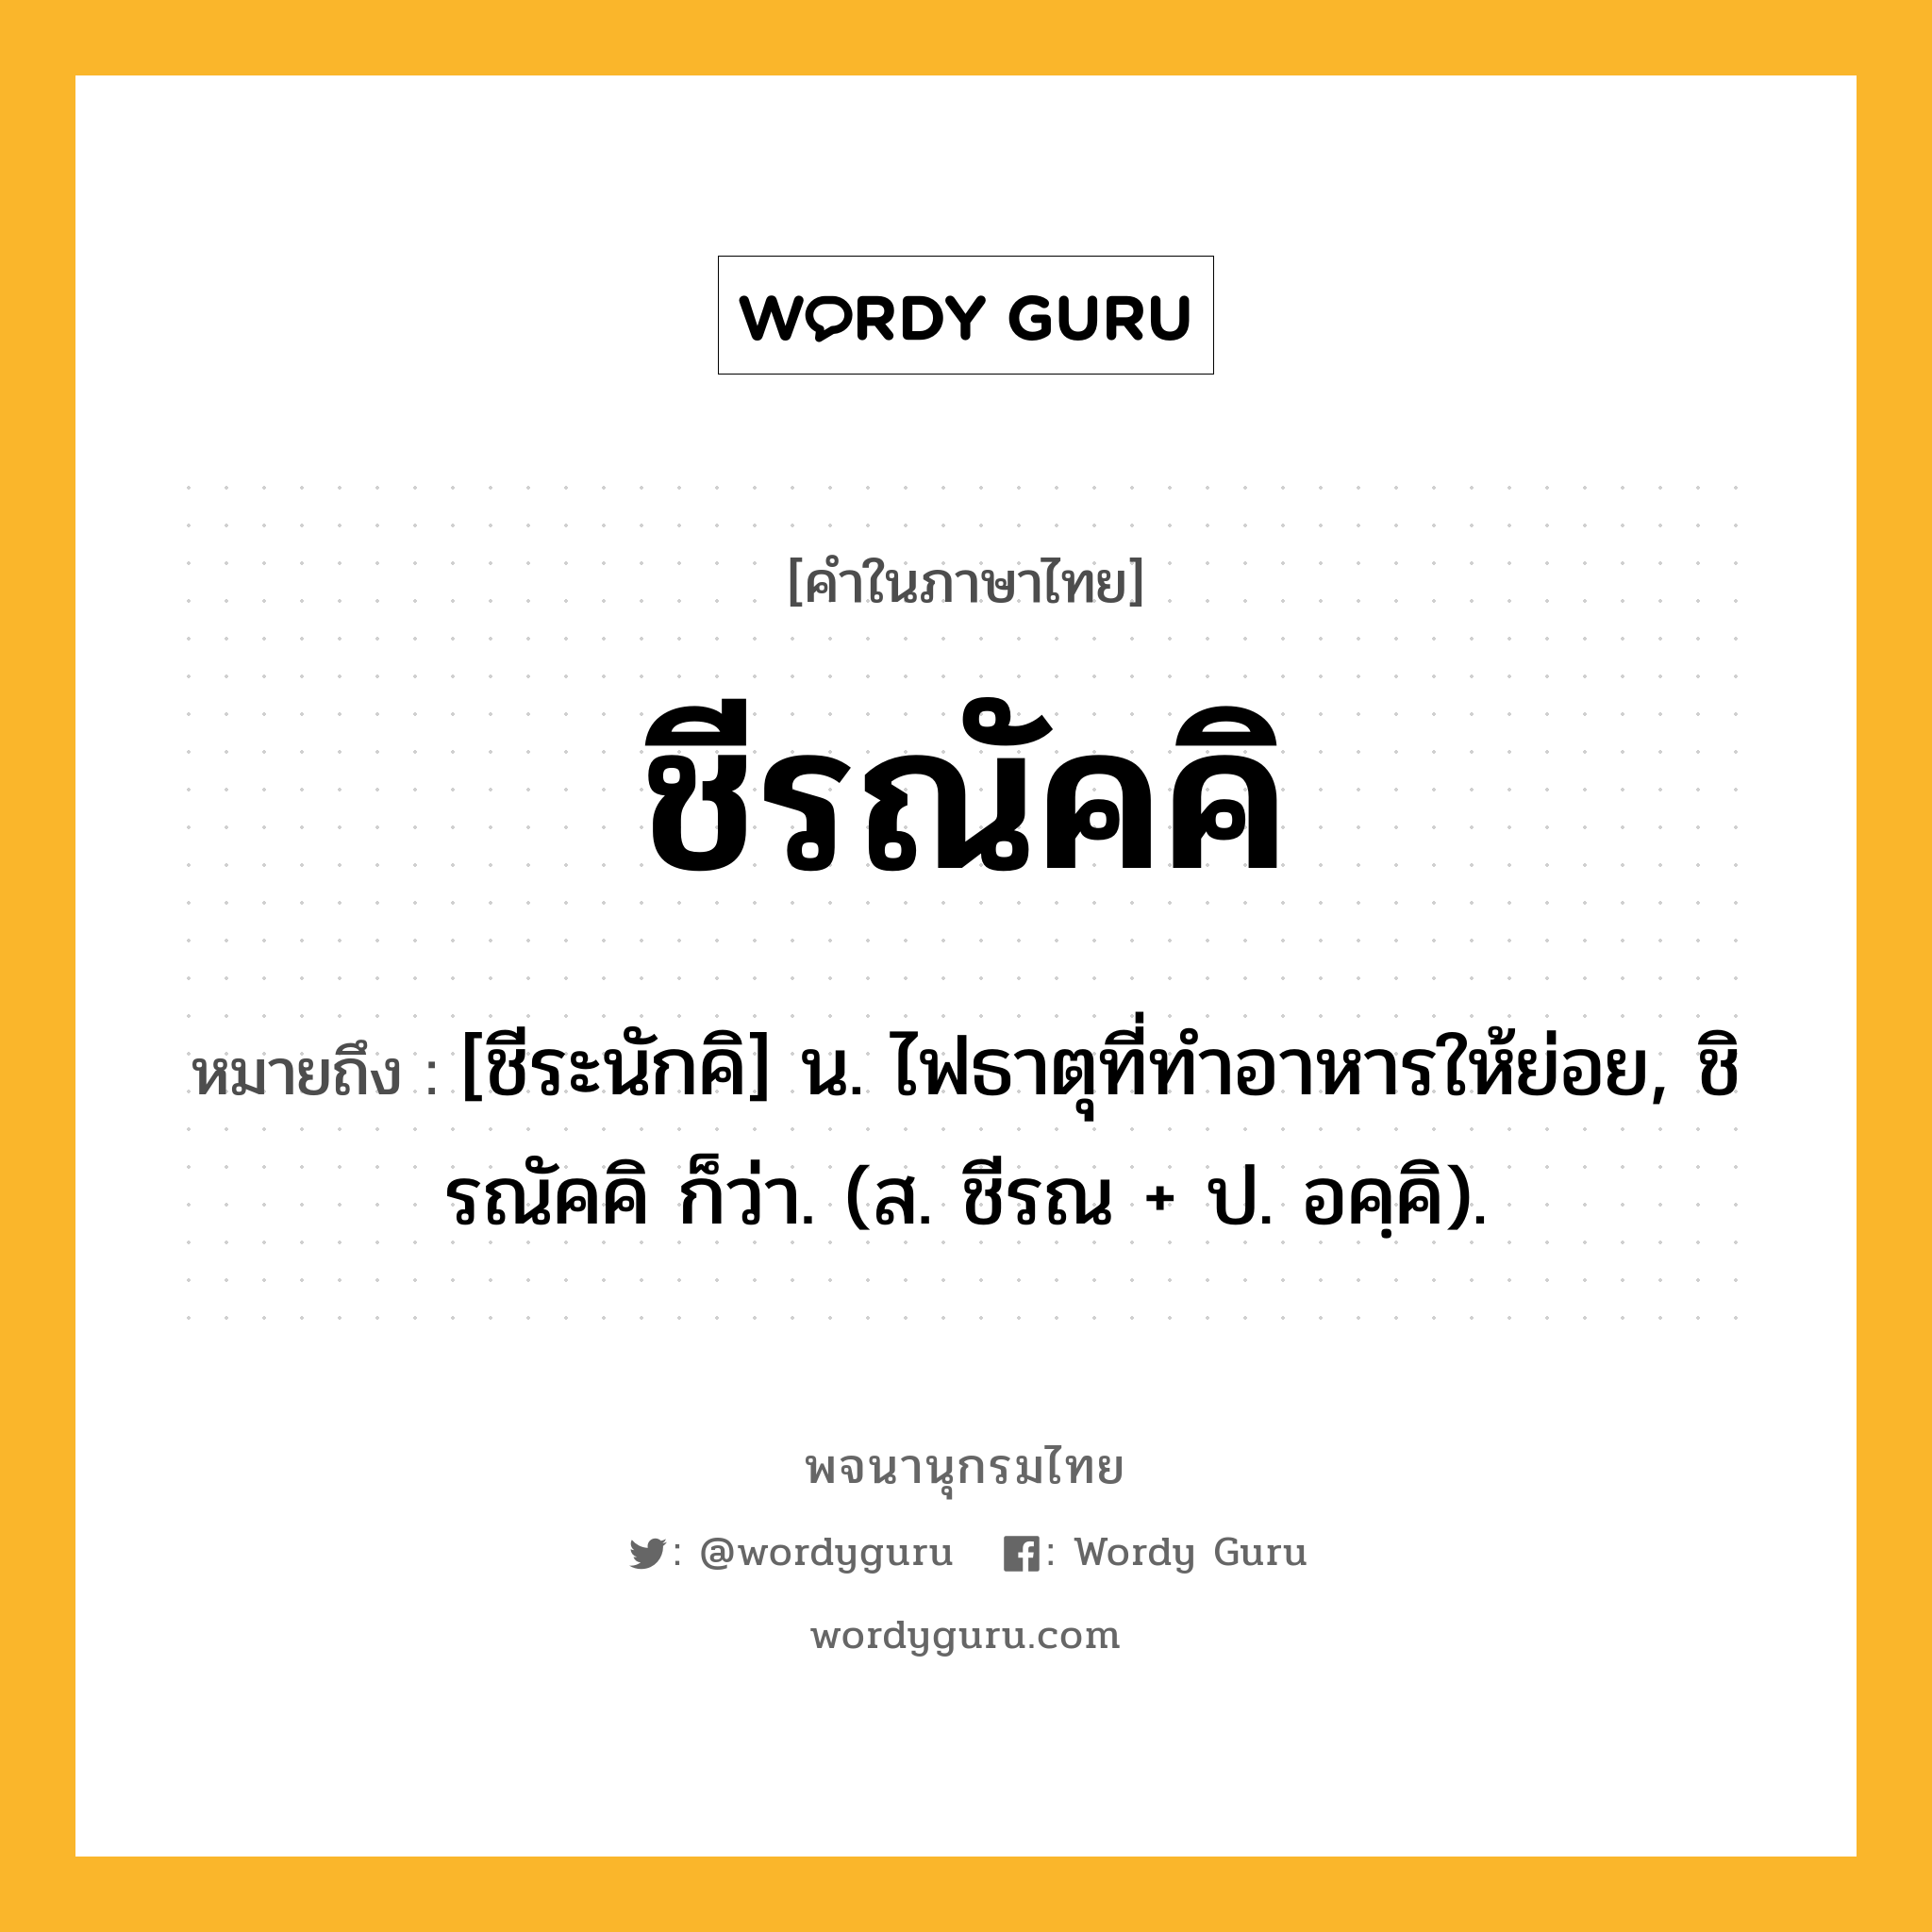 ชีรณัคคิ ความหมาย หมายถึงอะไร?, คำในภาษาไทย ชีรณัคคิ หมายถึง [ชีระนักคิ] น. ไฟธาตุที่ทําอาหารให้ย่อย, ชิรณัคคิ ก็ว่า. (ส. ชีรณ + ป. อคฺคิ).